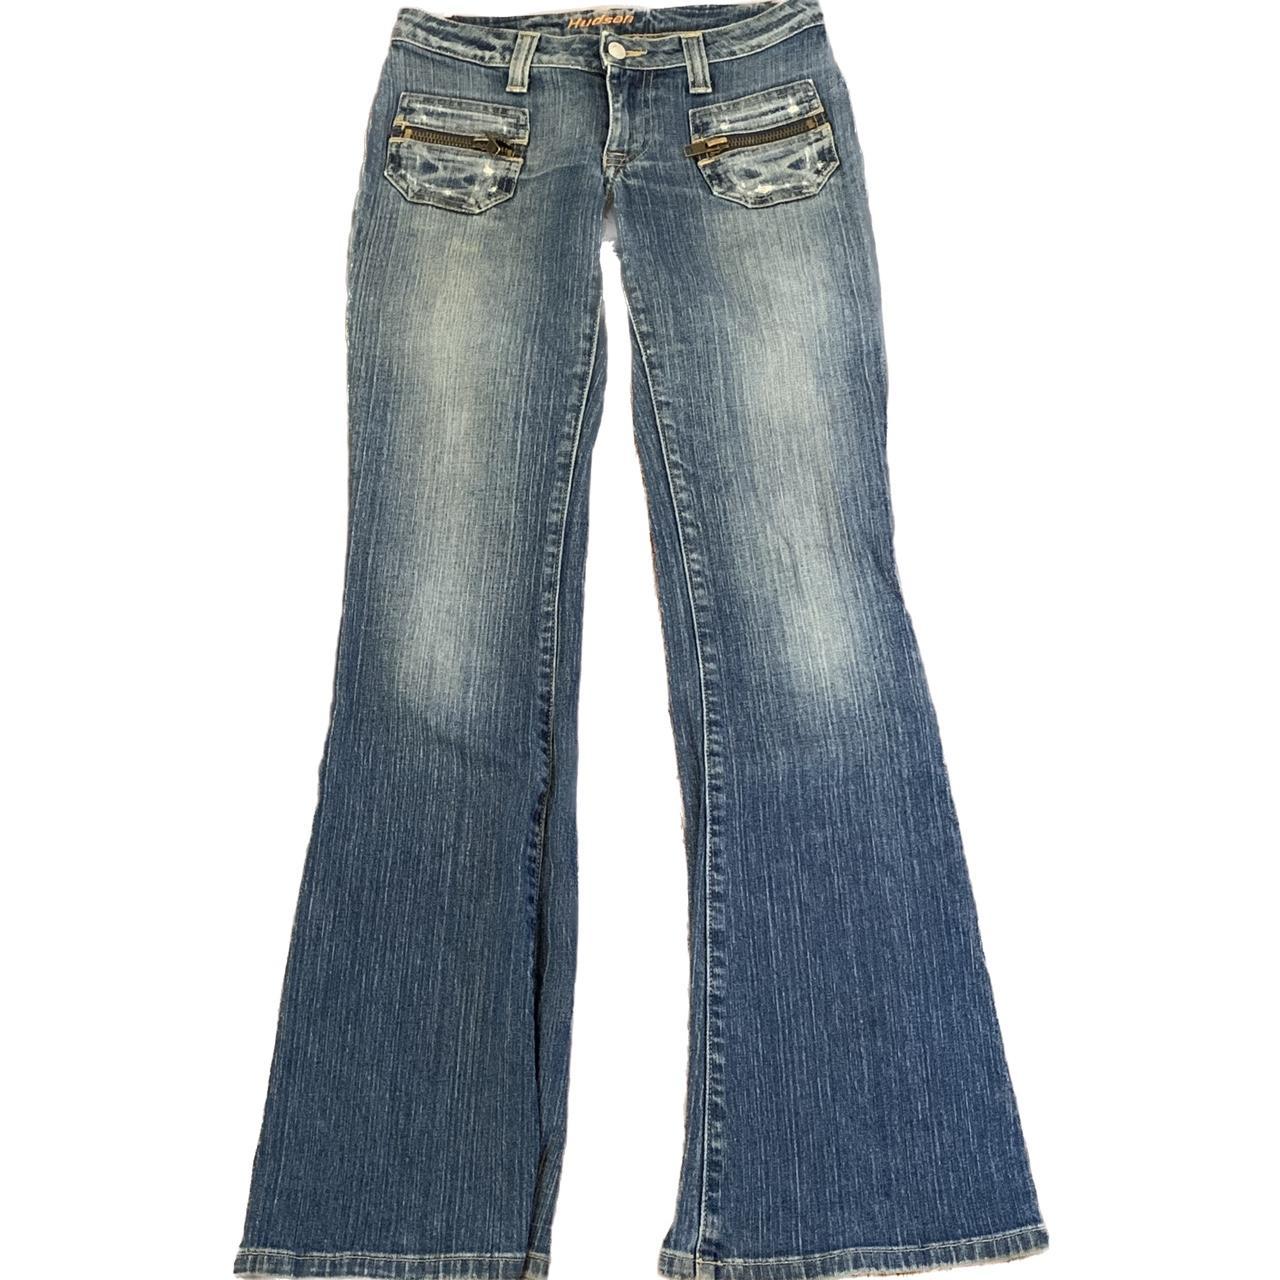 Hudson Jeans Women's Jeans | Depop